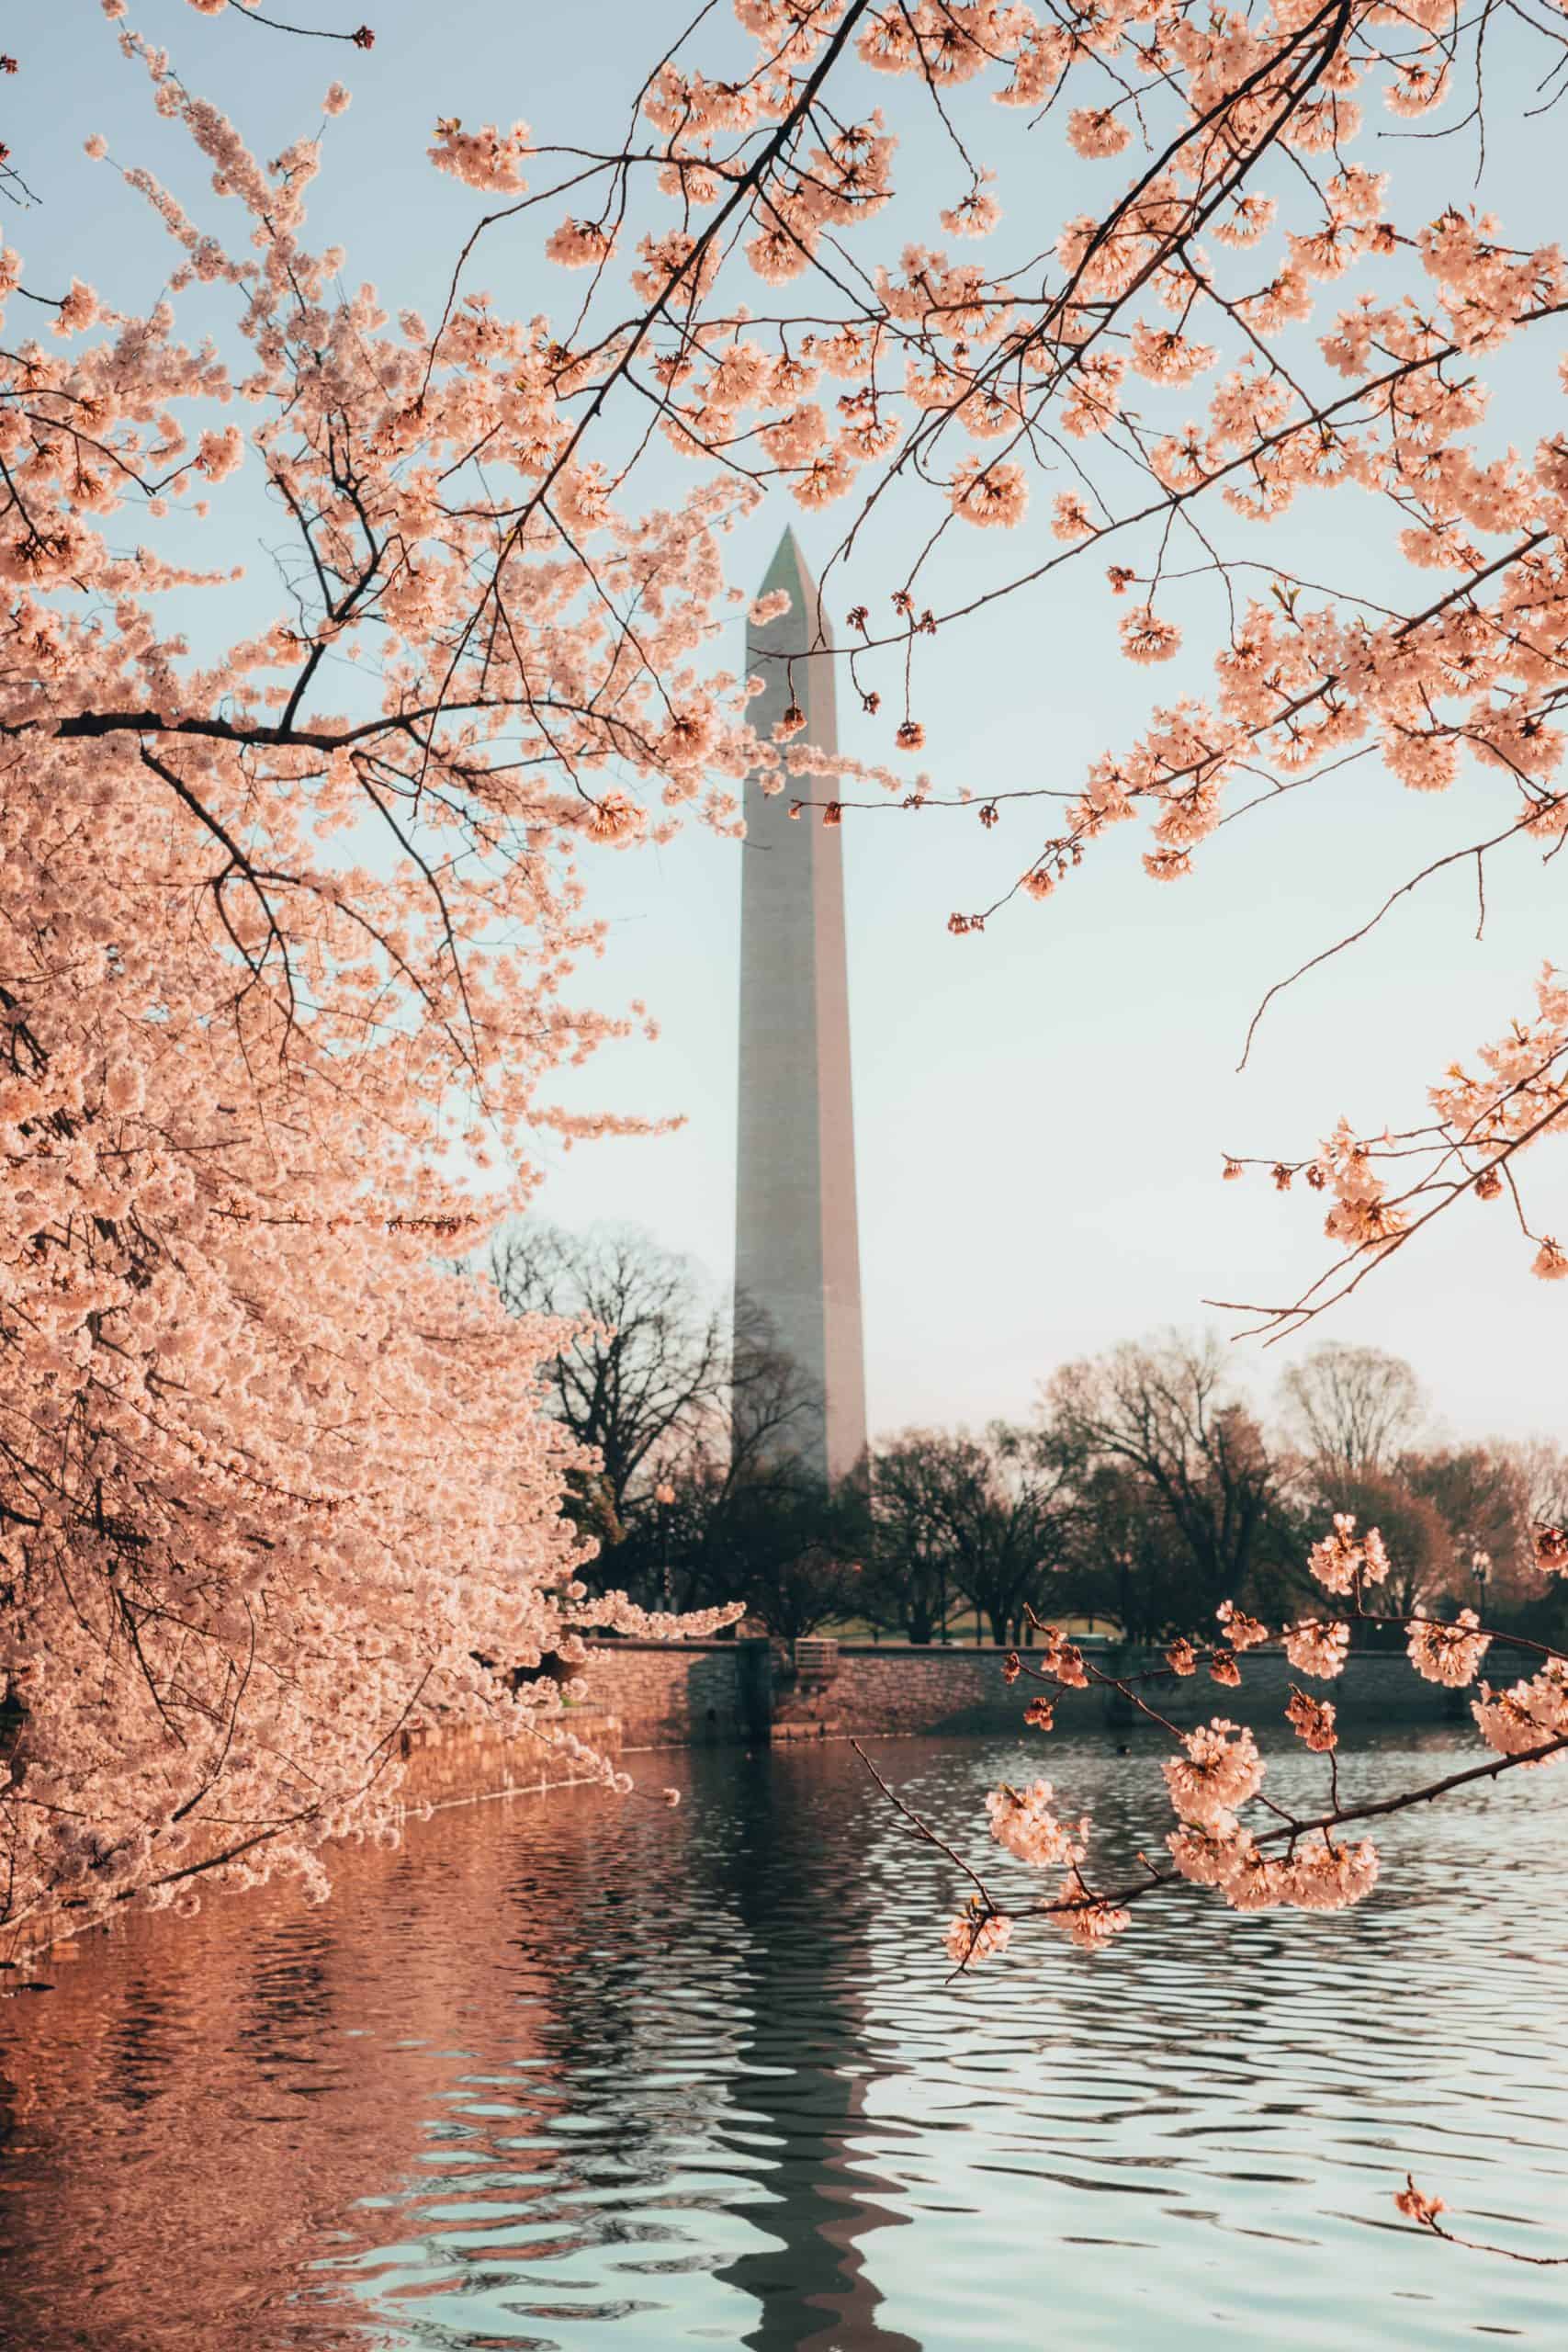 Washington Monument, Washington, DC